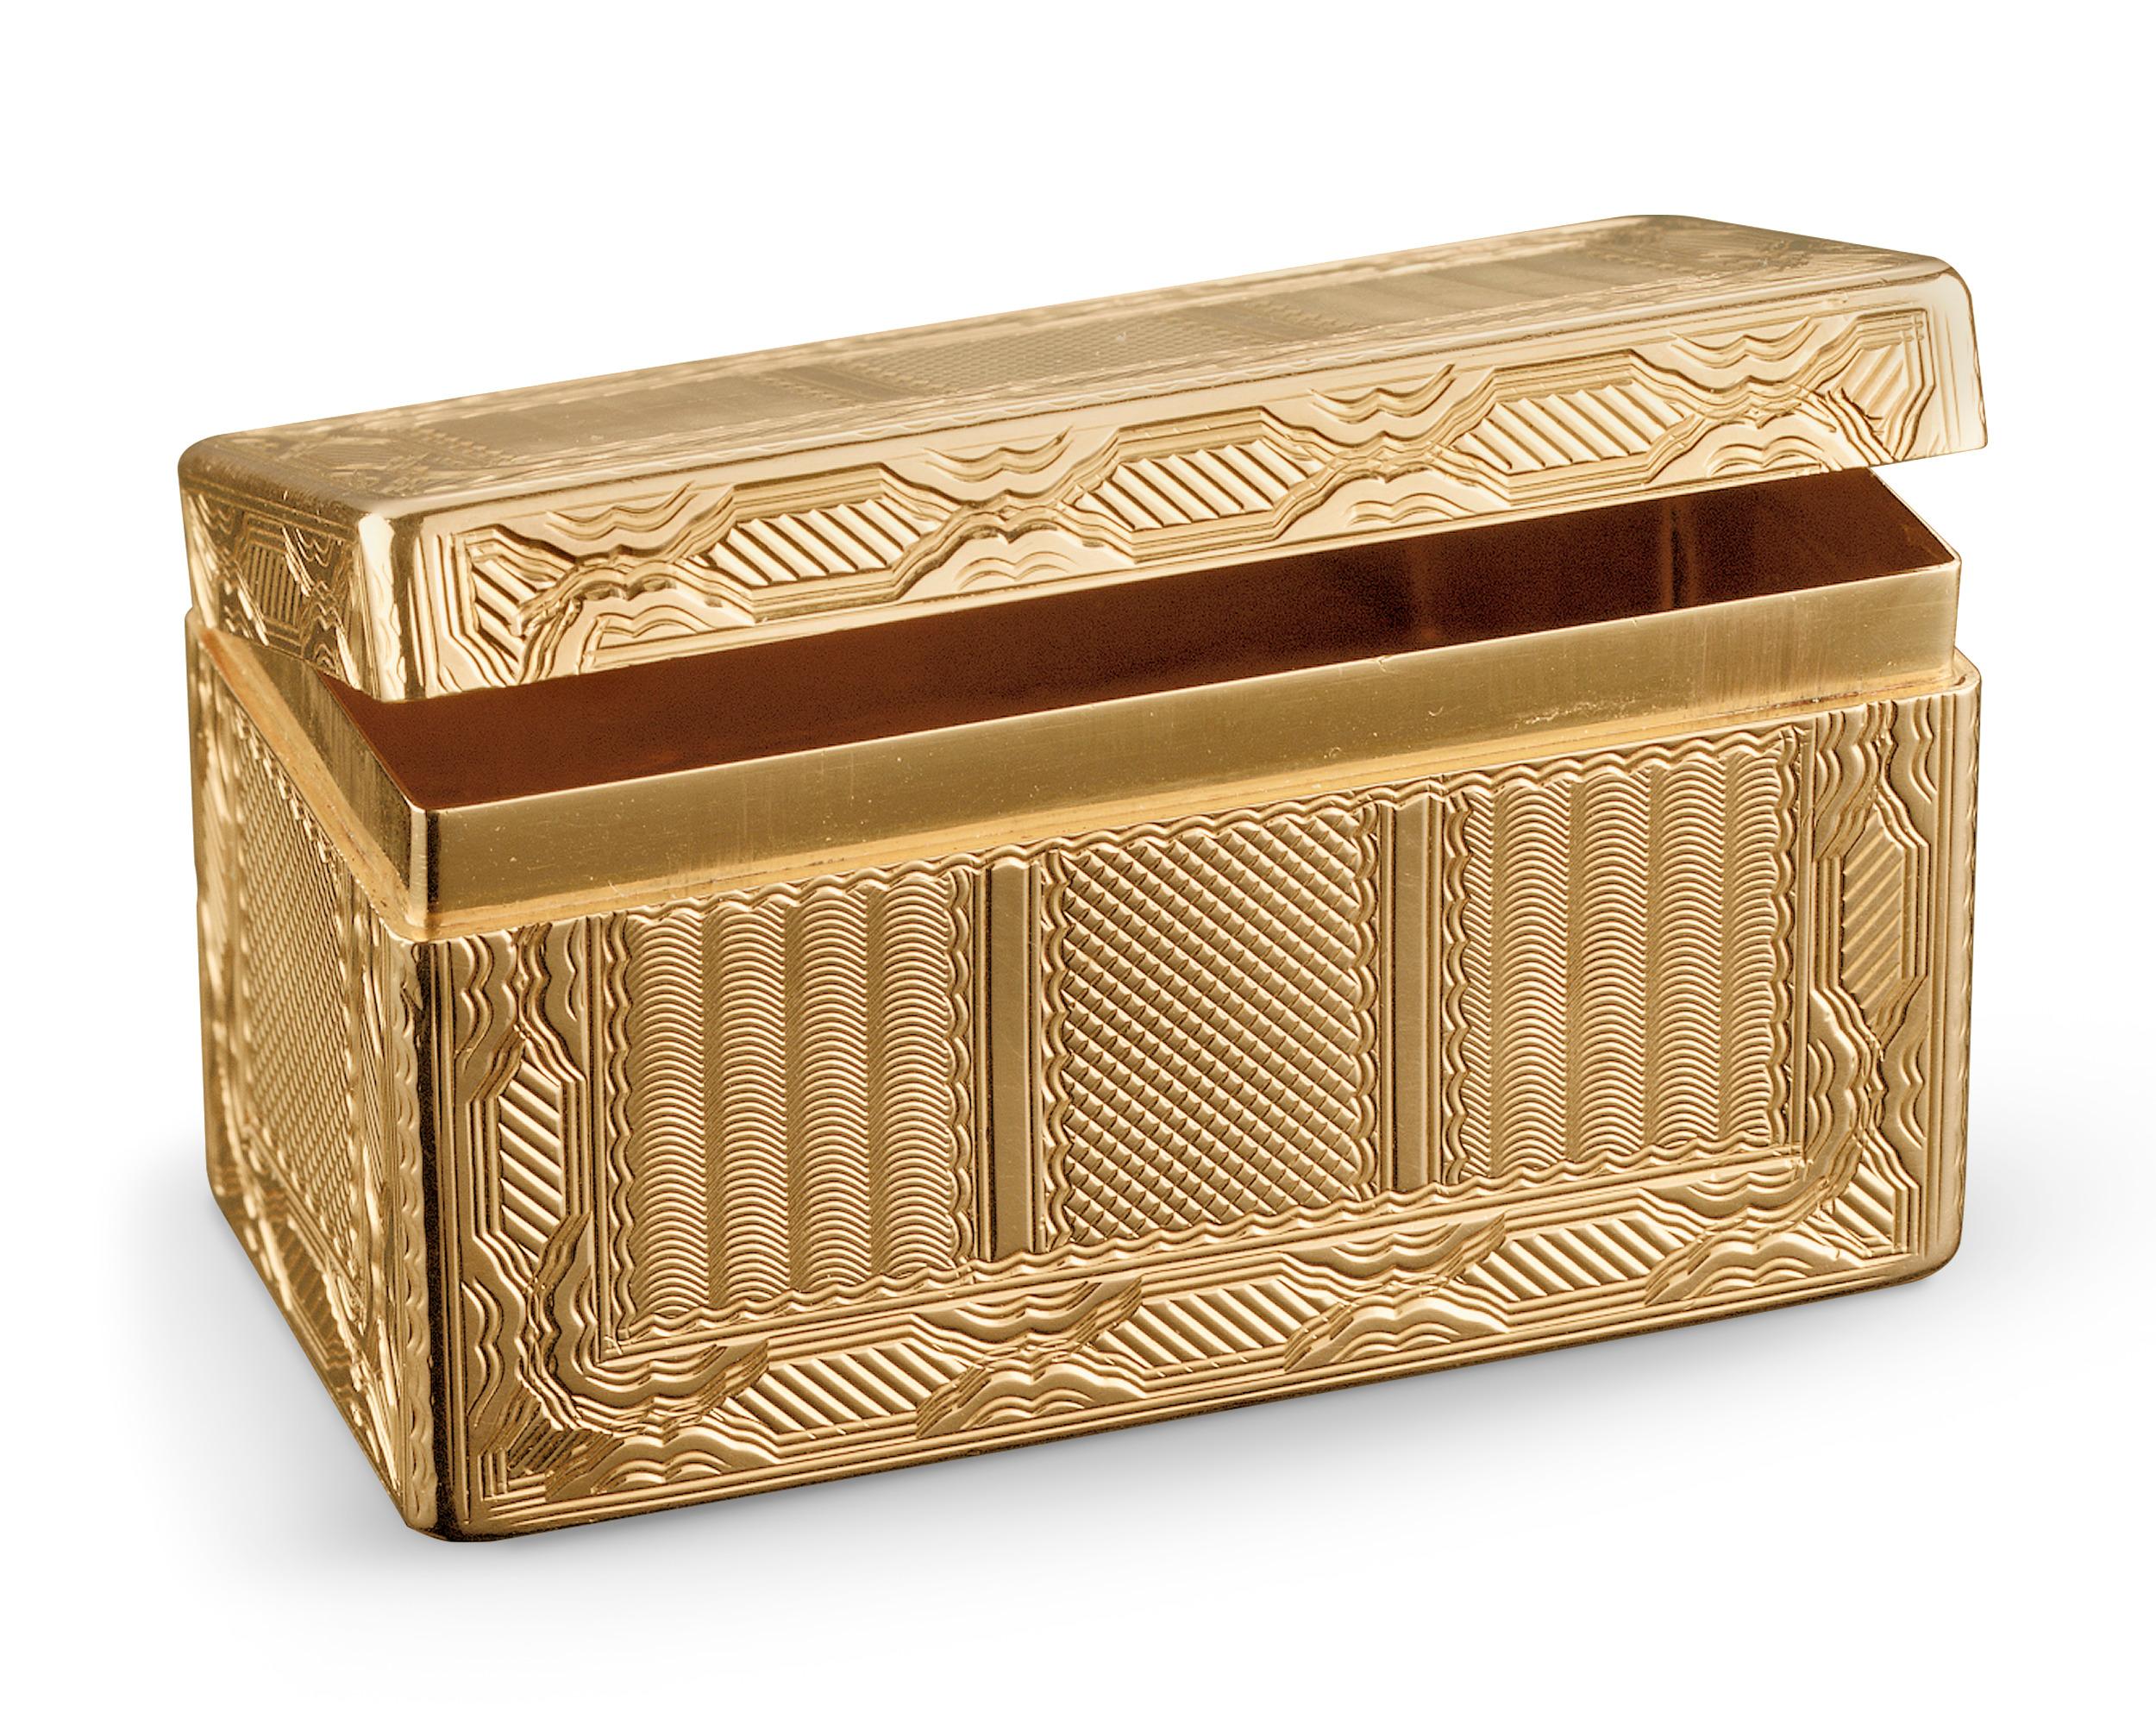 Diese bedeutende goldene Schnupftabakdose von Ludwig XV. stammt aus der prestigeträchtigen Sammlung des Herzogs und der Herzogin von Windsor. Das goldene Kästchen mit Motordrehung wurde ursprünglich bei der historischen Auktion The Jewels of the